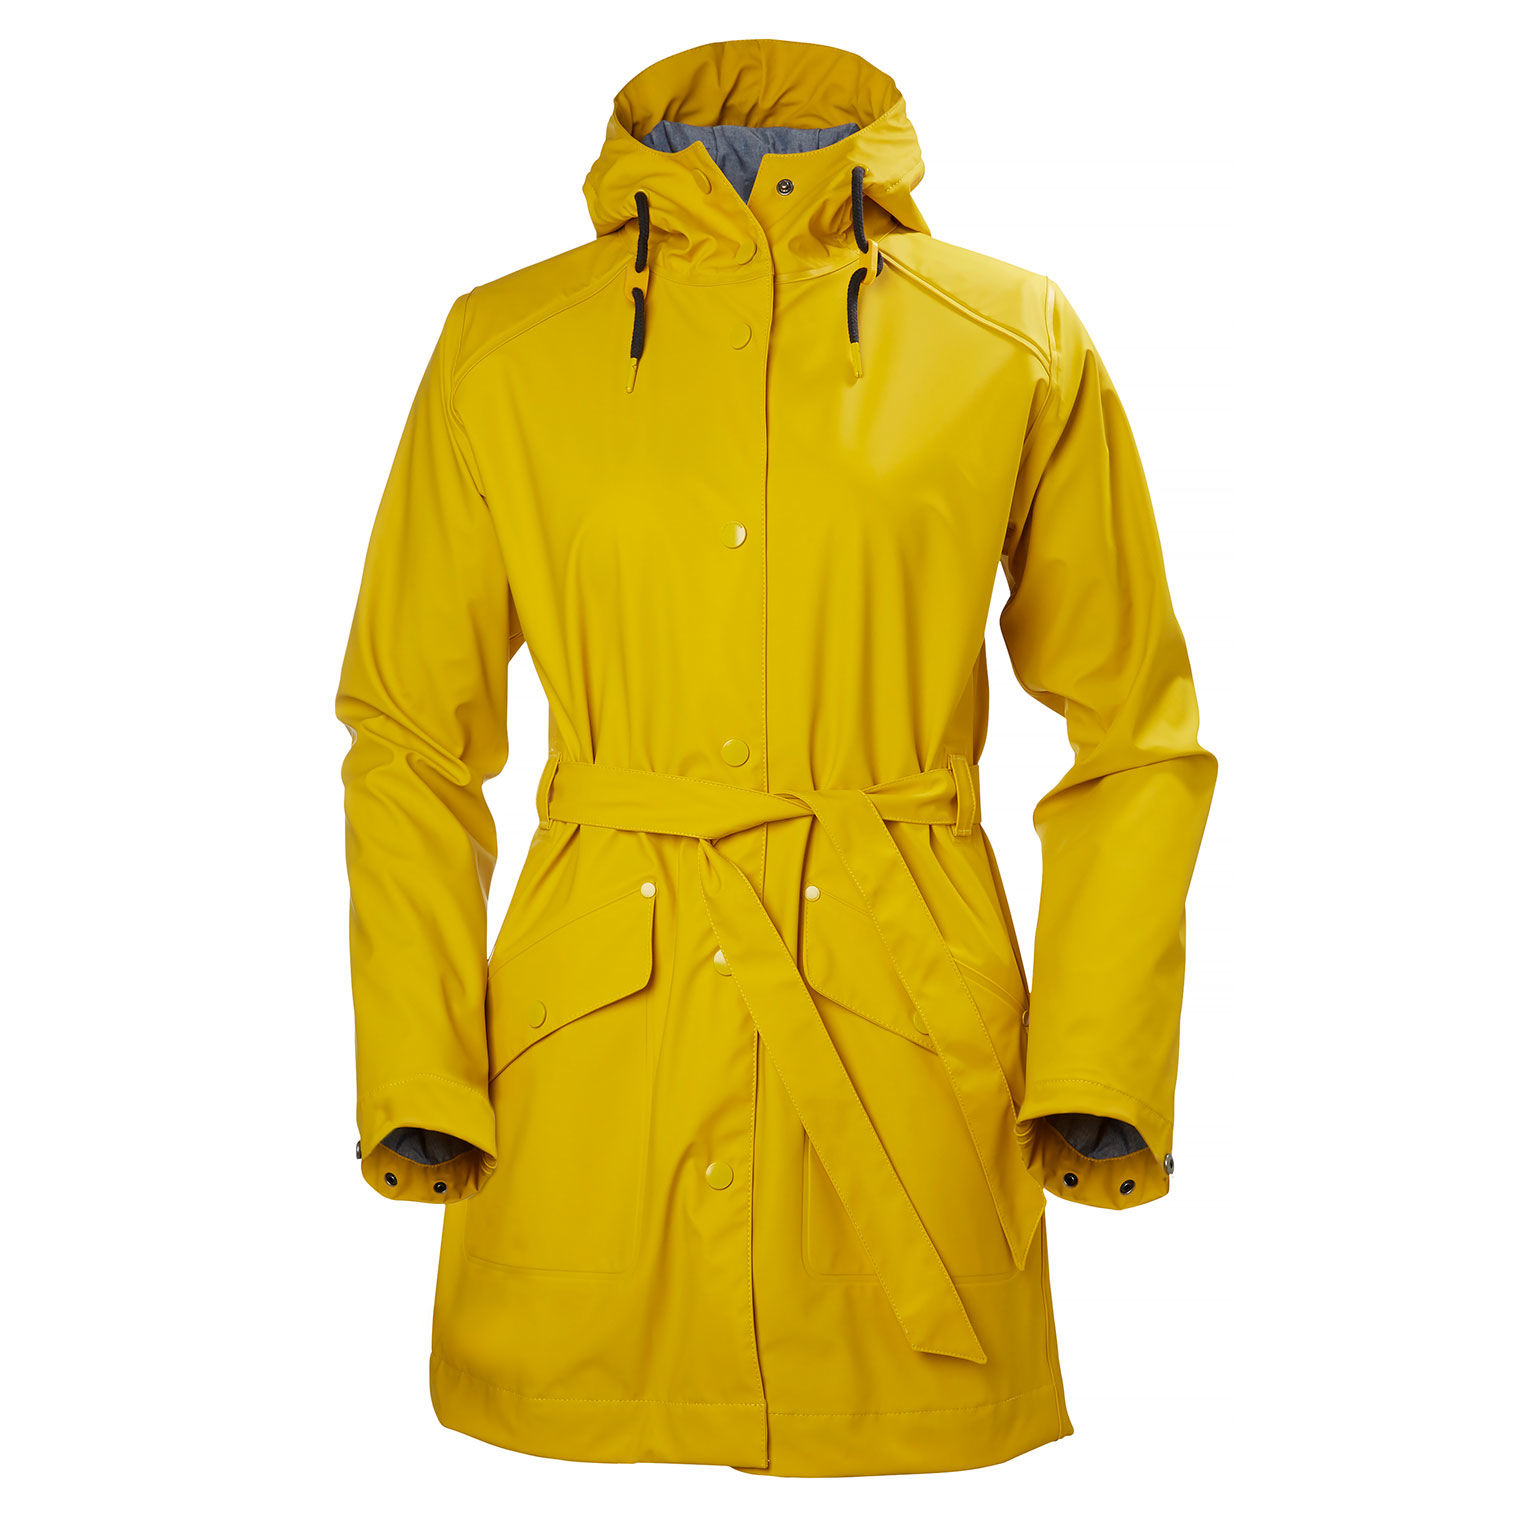 womens yellow rain jacket